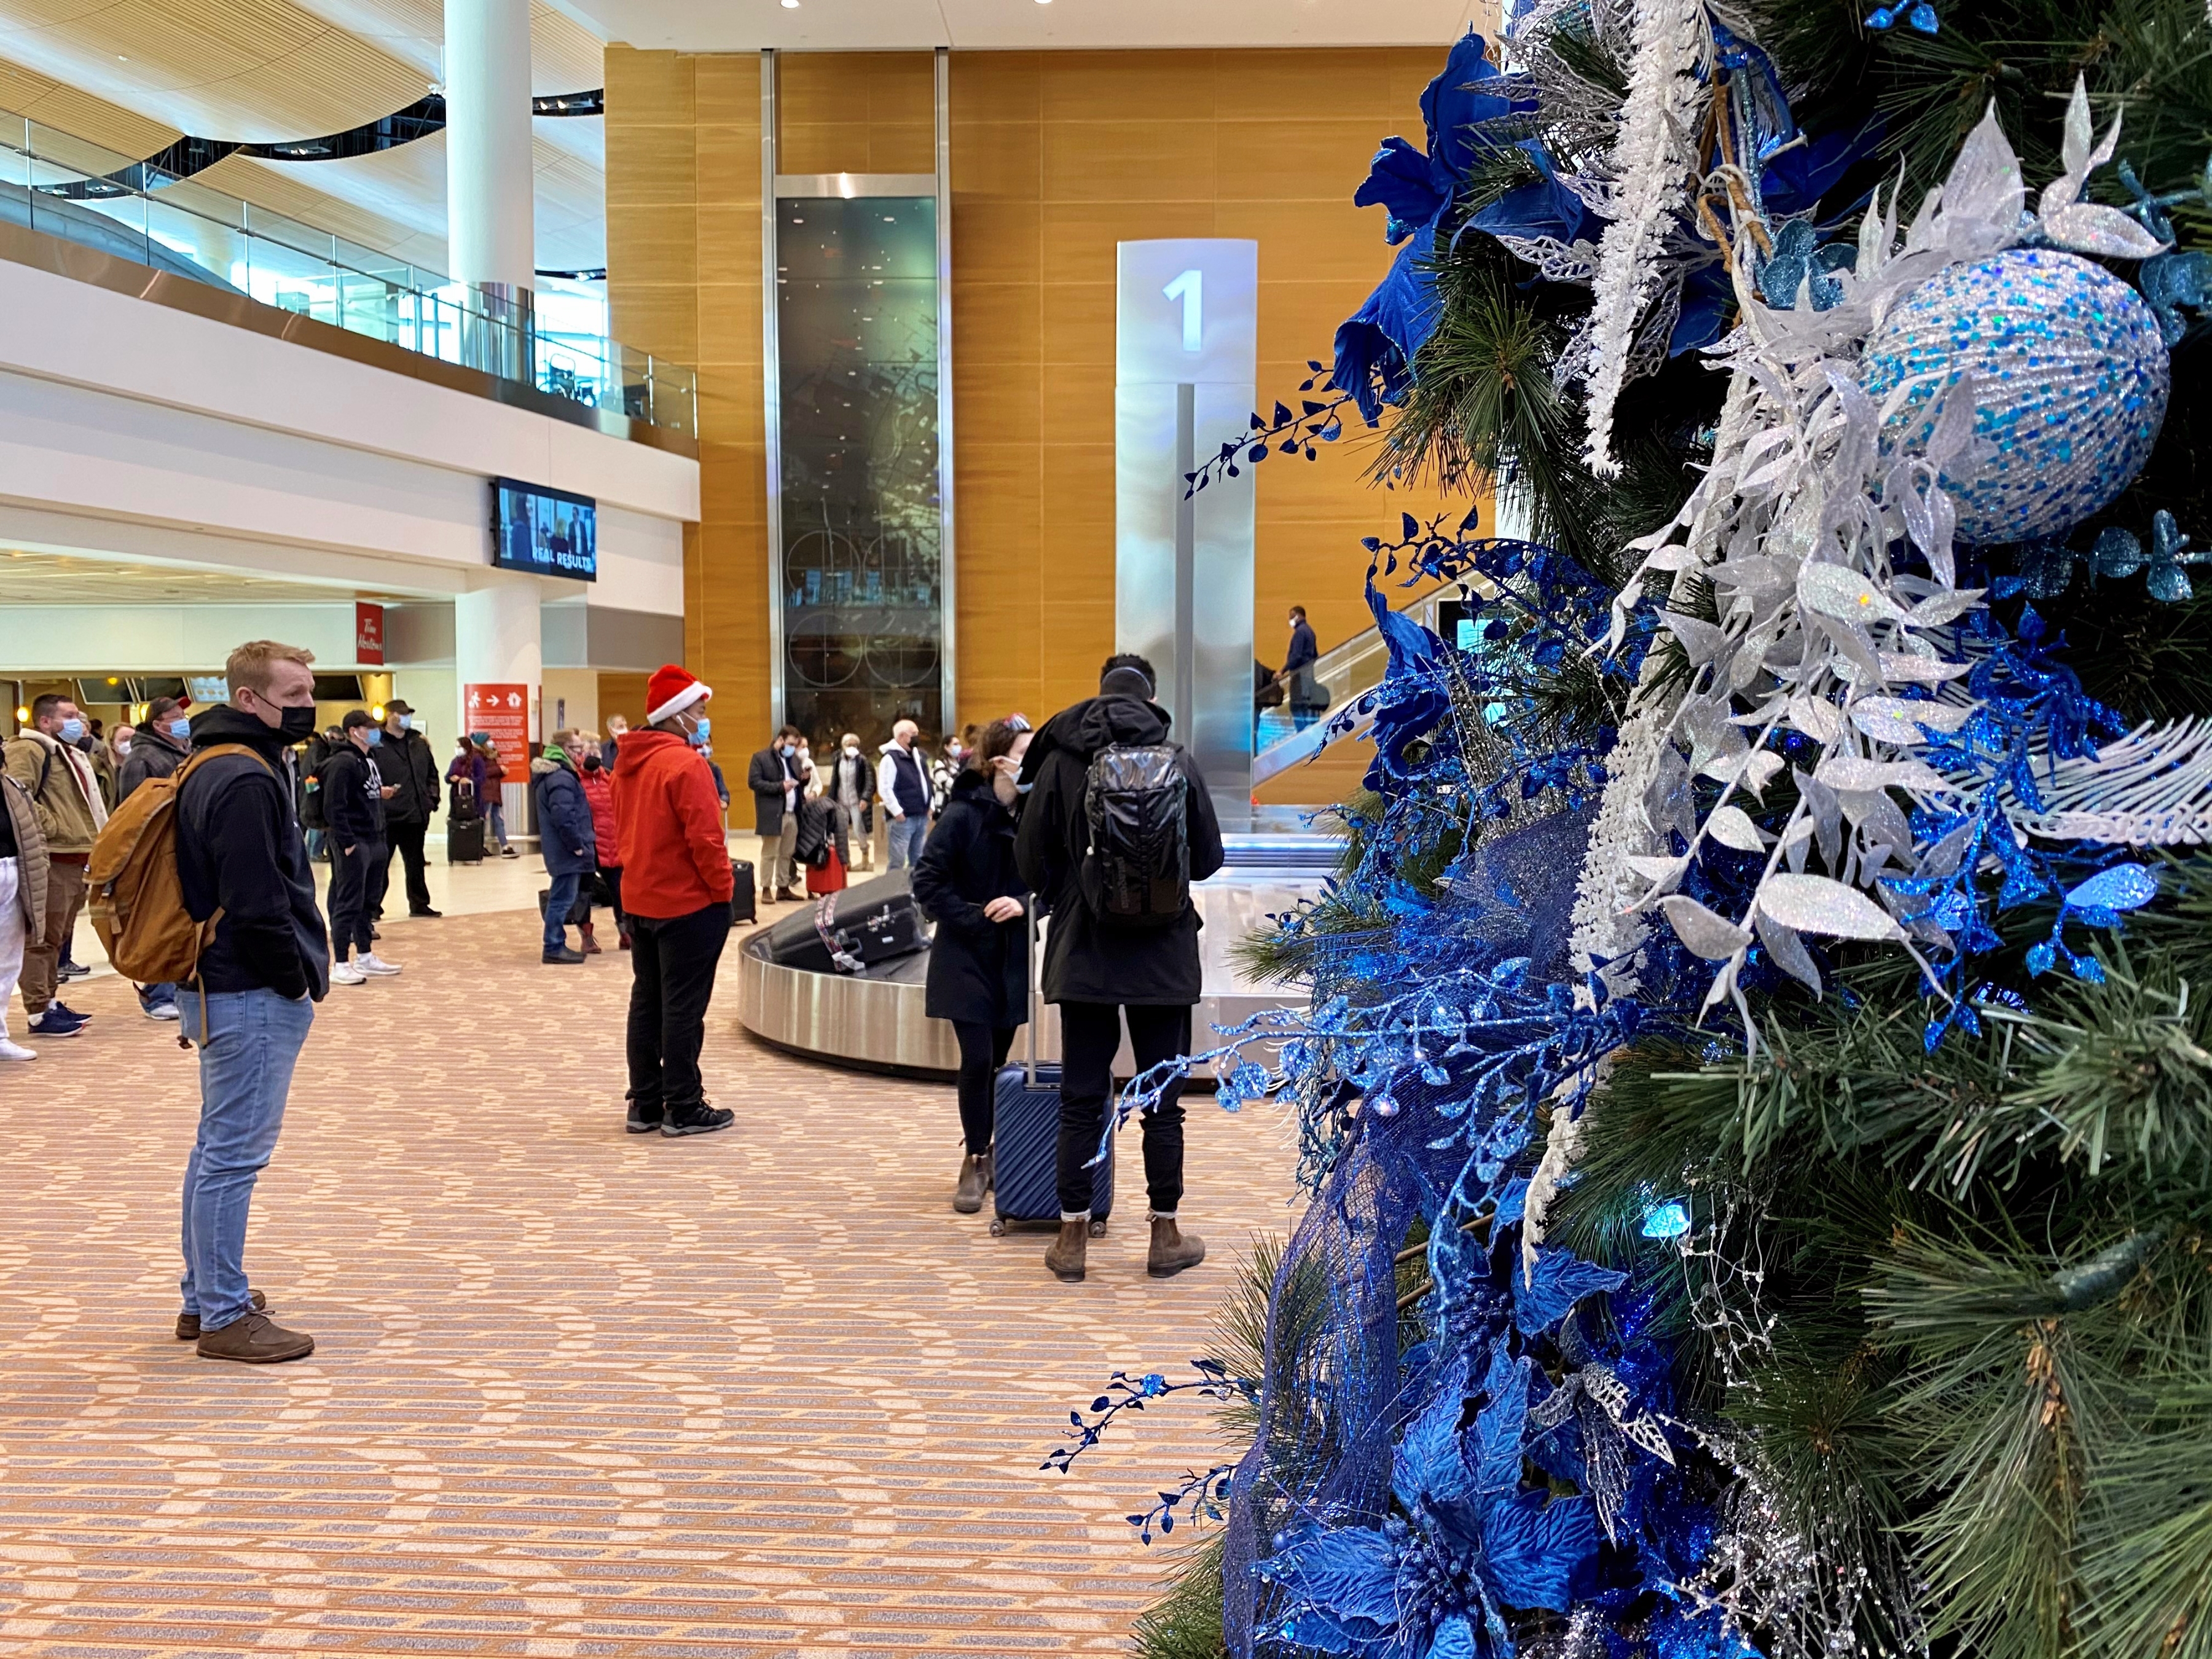 Des voyageurs se tiennent à côté d'un arbre de Noël dans le hall des arrivées en attendant leurs bagages.